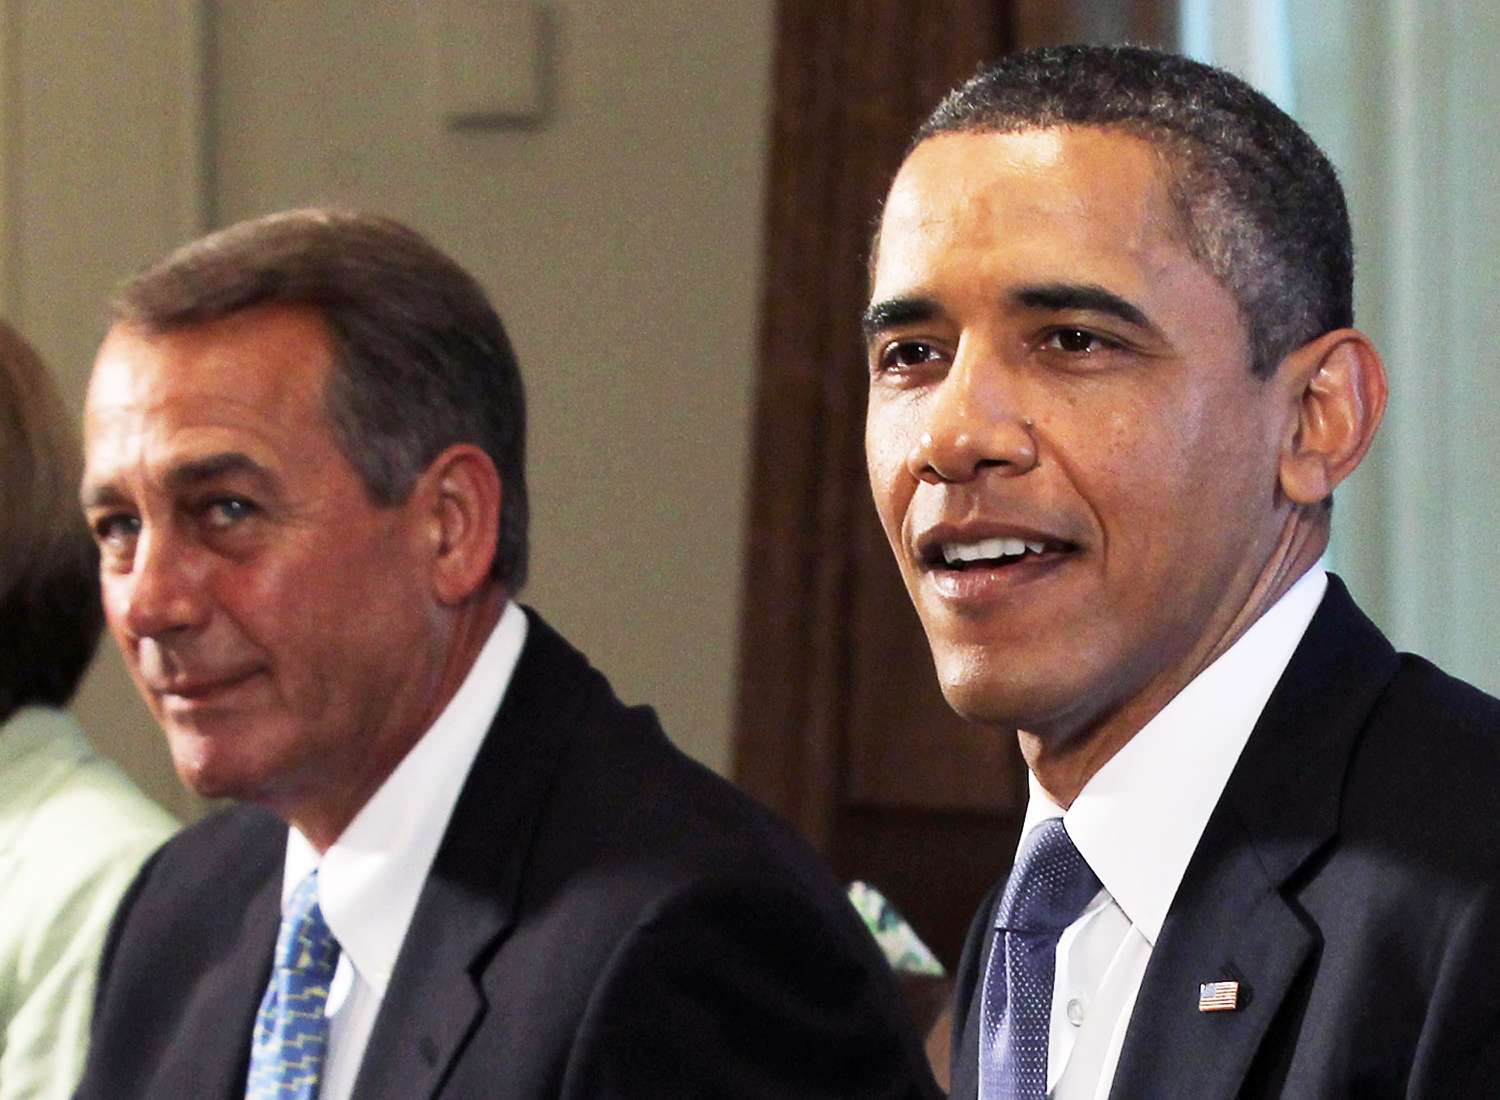 House Speaker John Boehner (R-OH) and President Obama